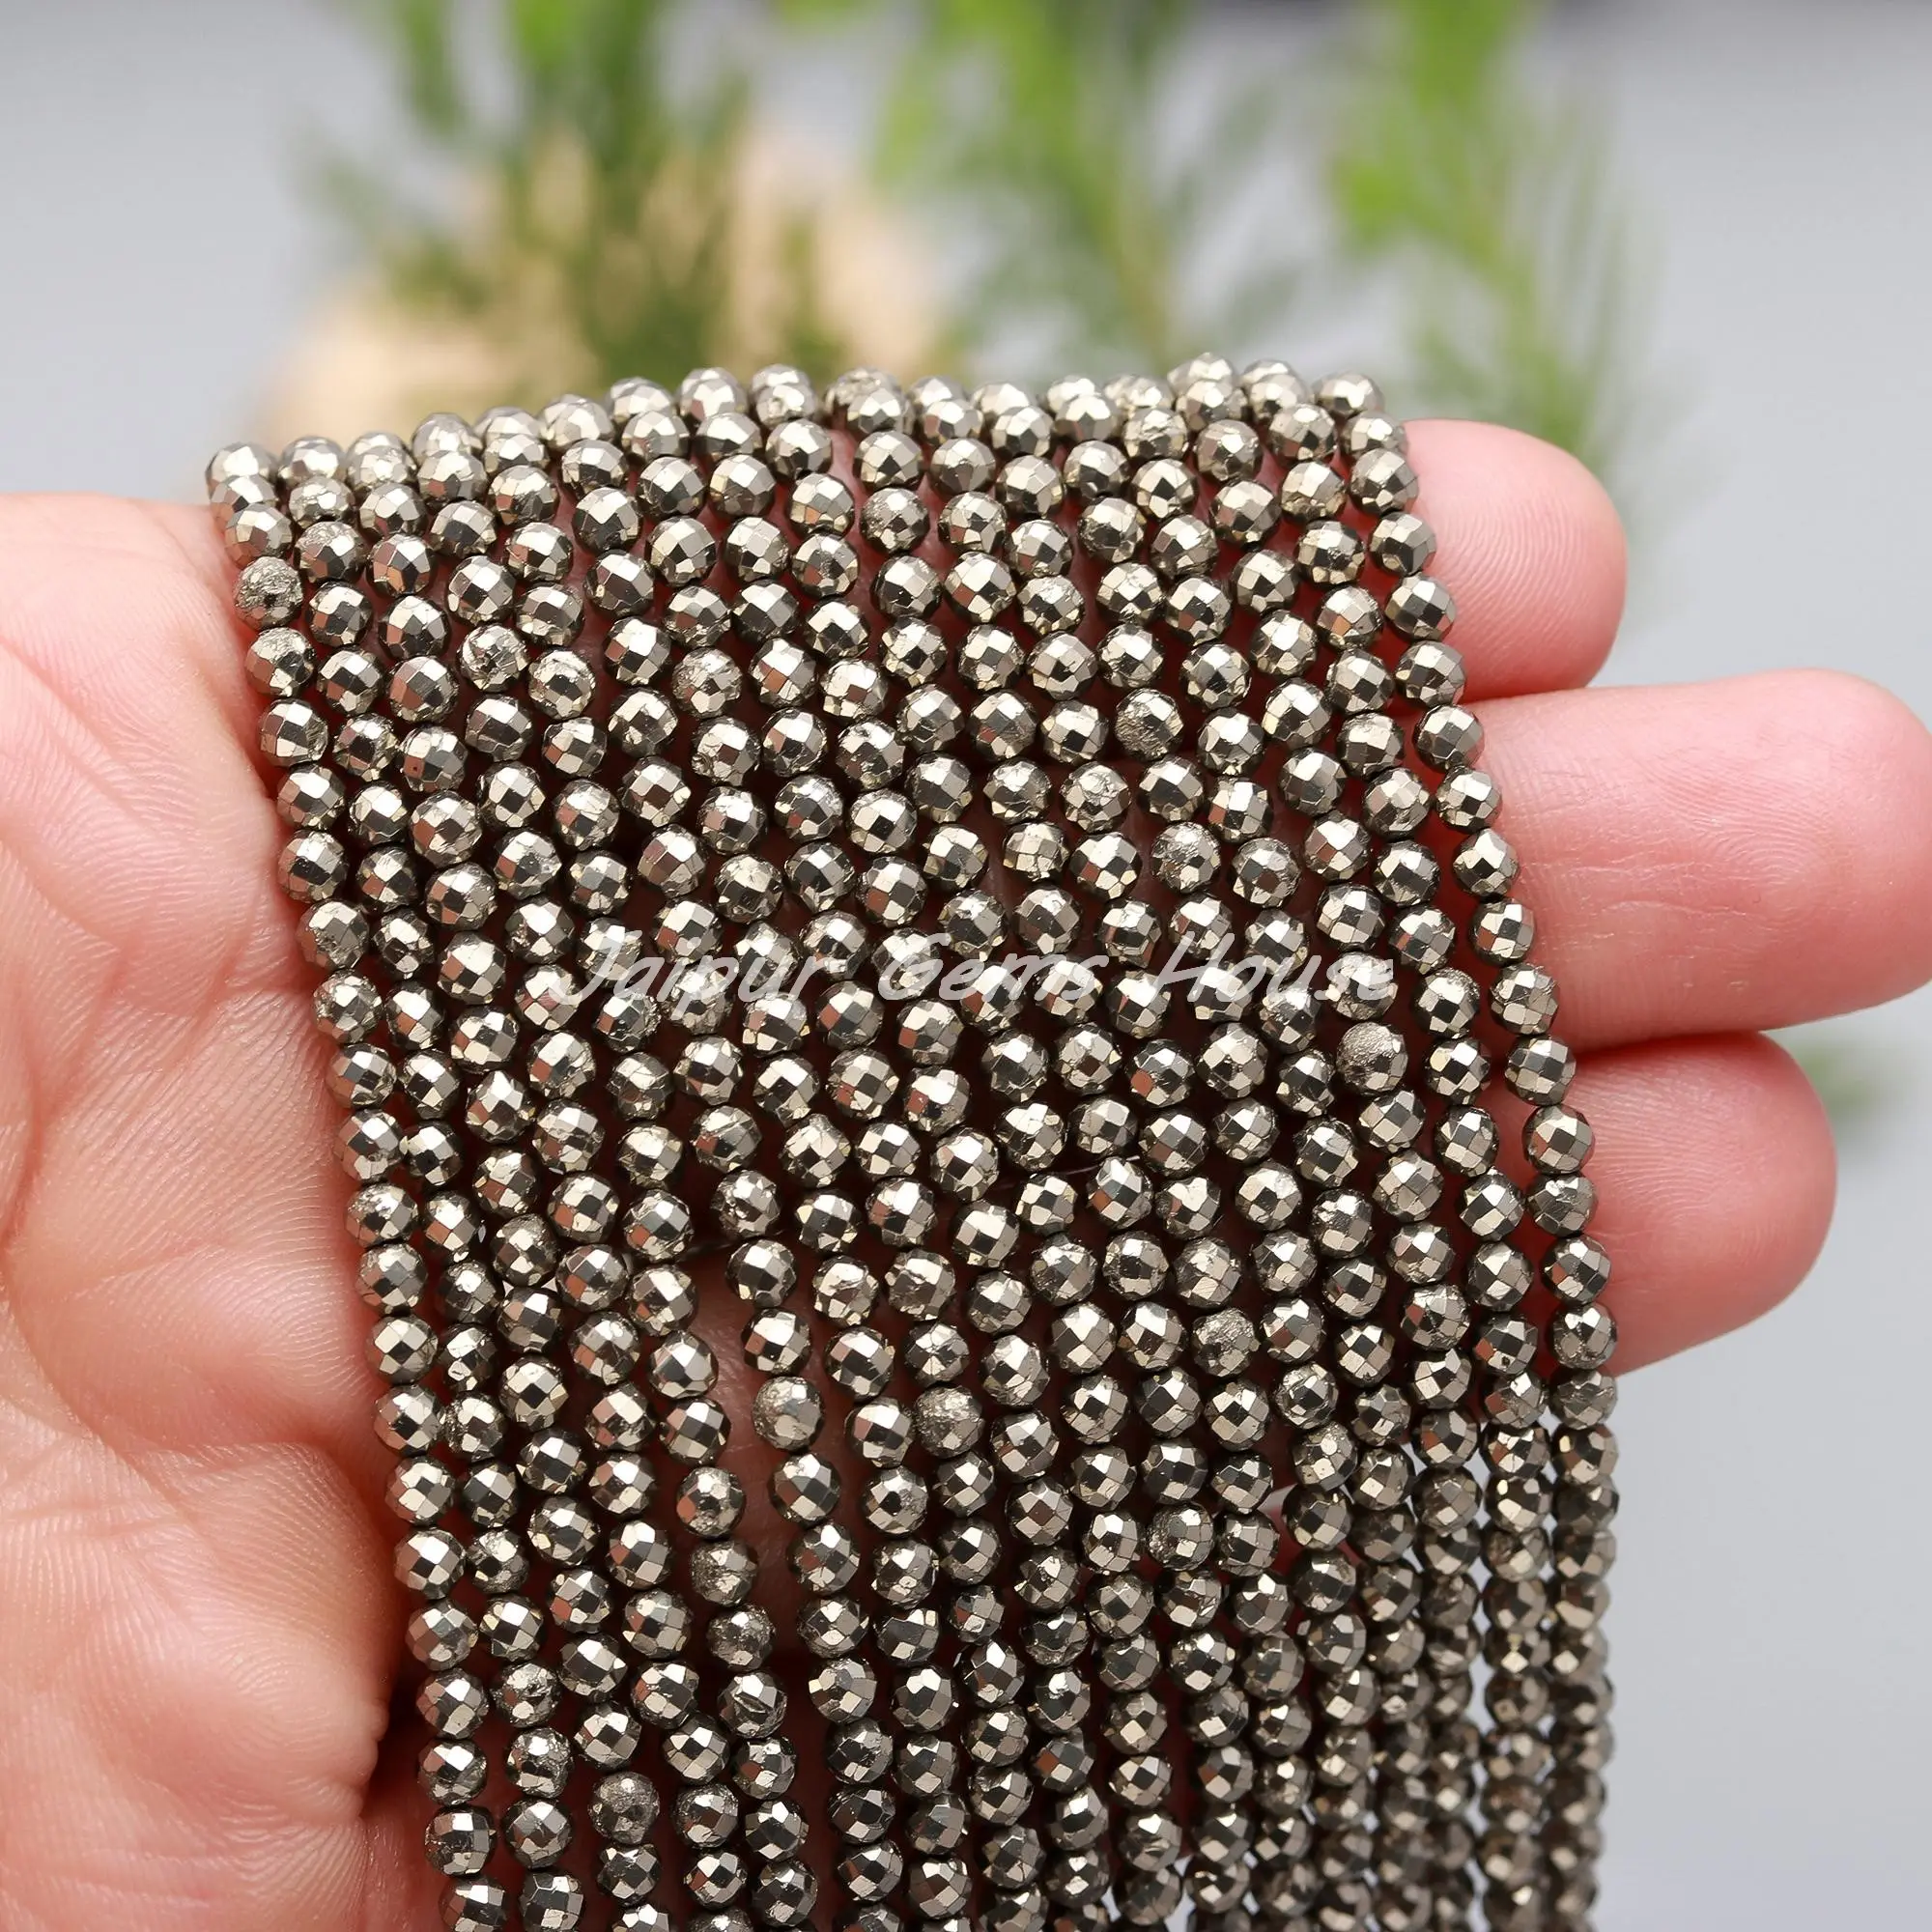 Kualitas Terbaik mikro pirit alami manik-manik bulat bersegi, manik-manik batu permata untuk perhiasan dan membuat kalung grosir manik-manik batu permata